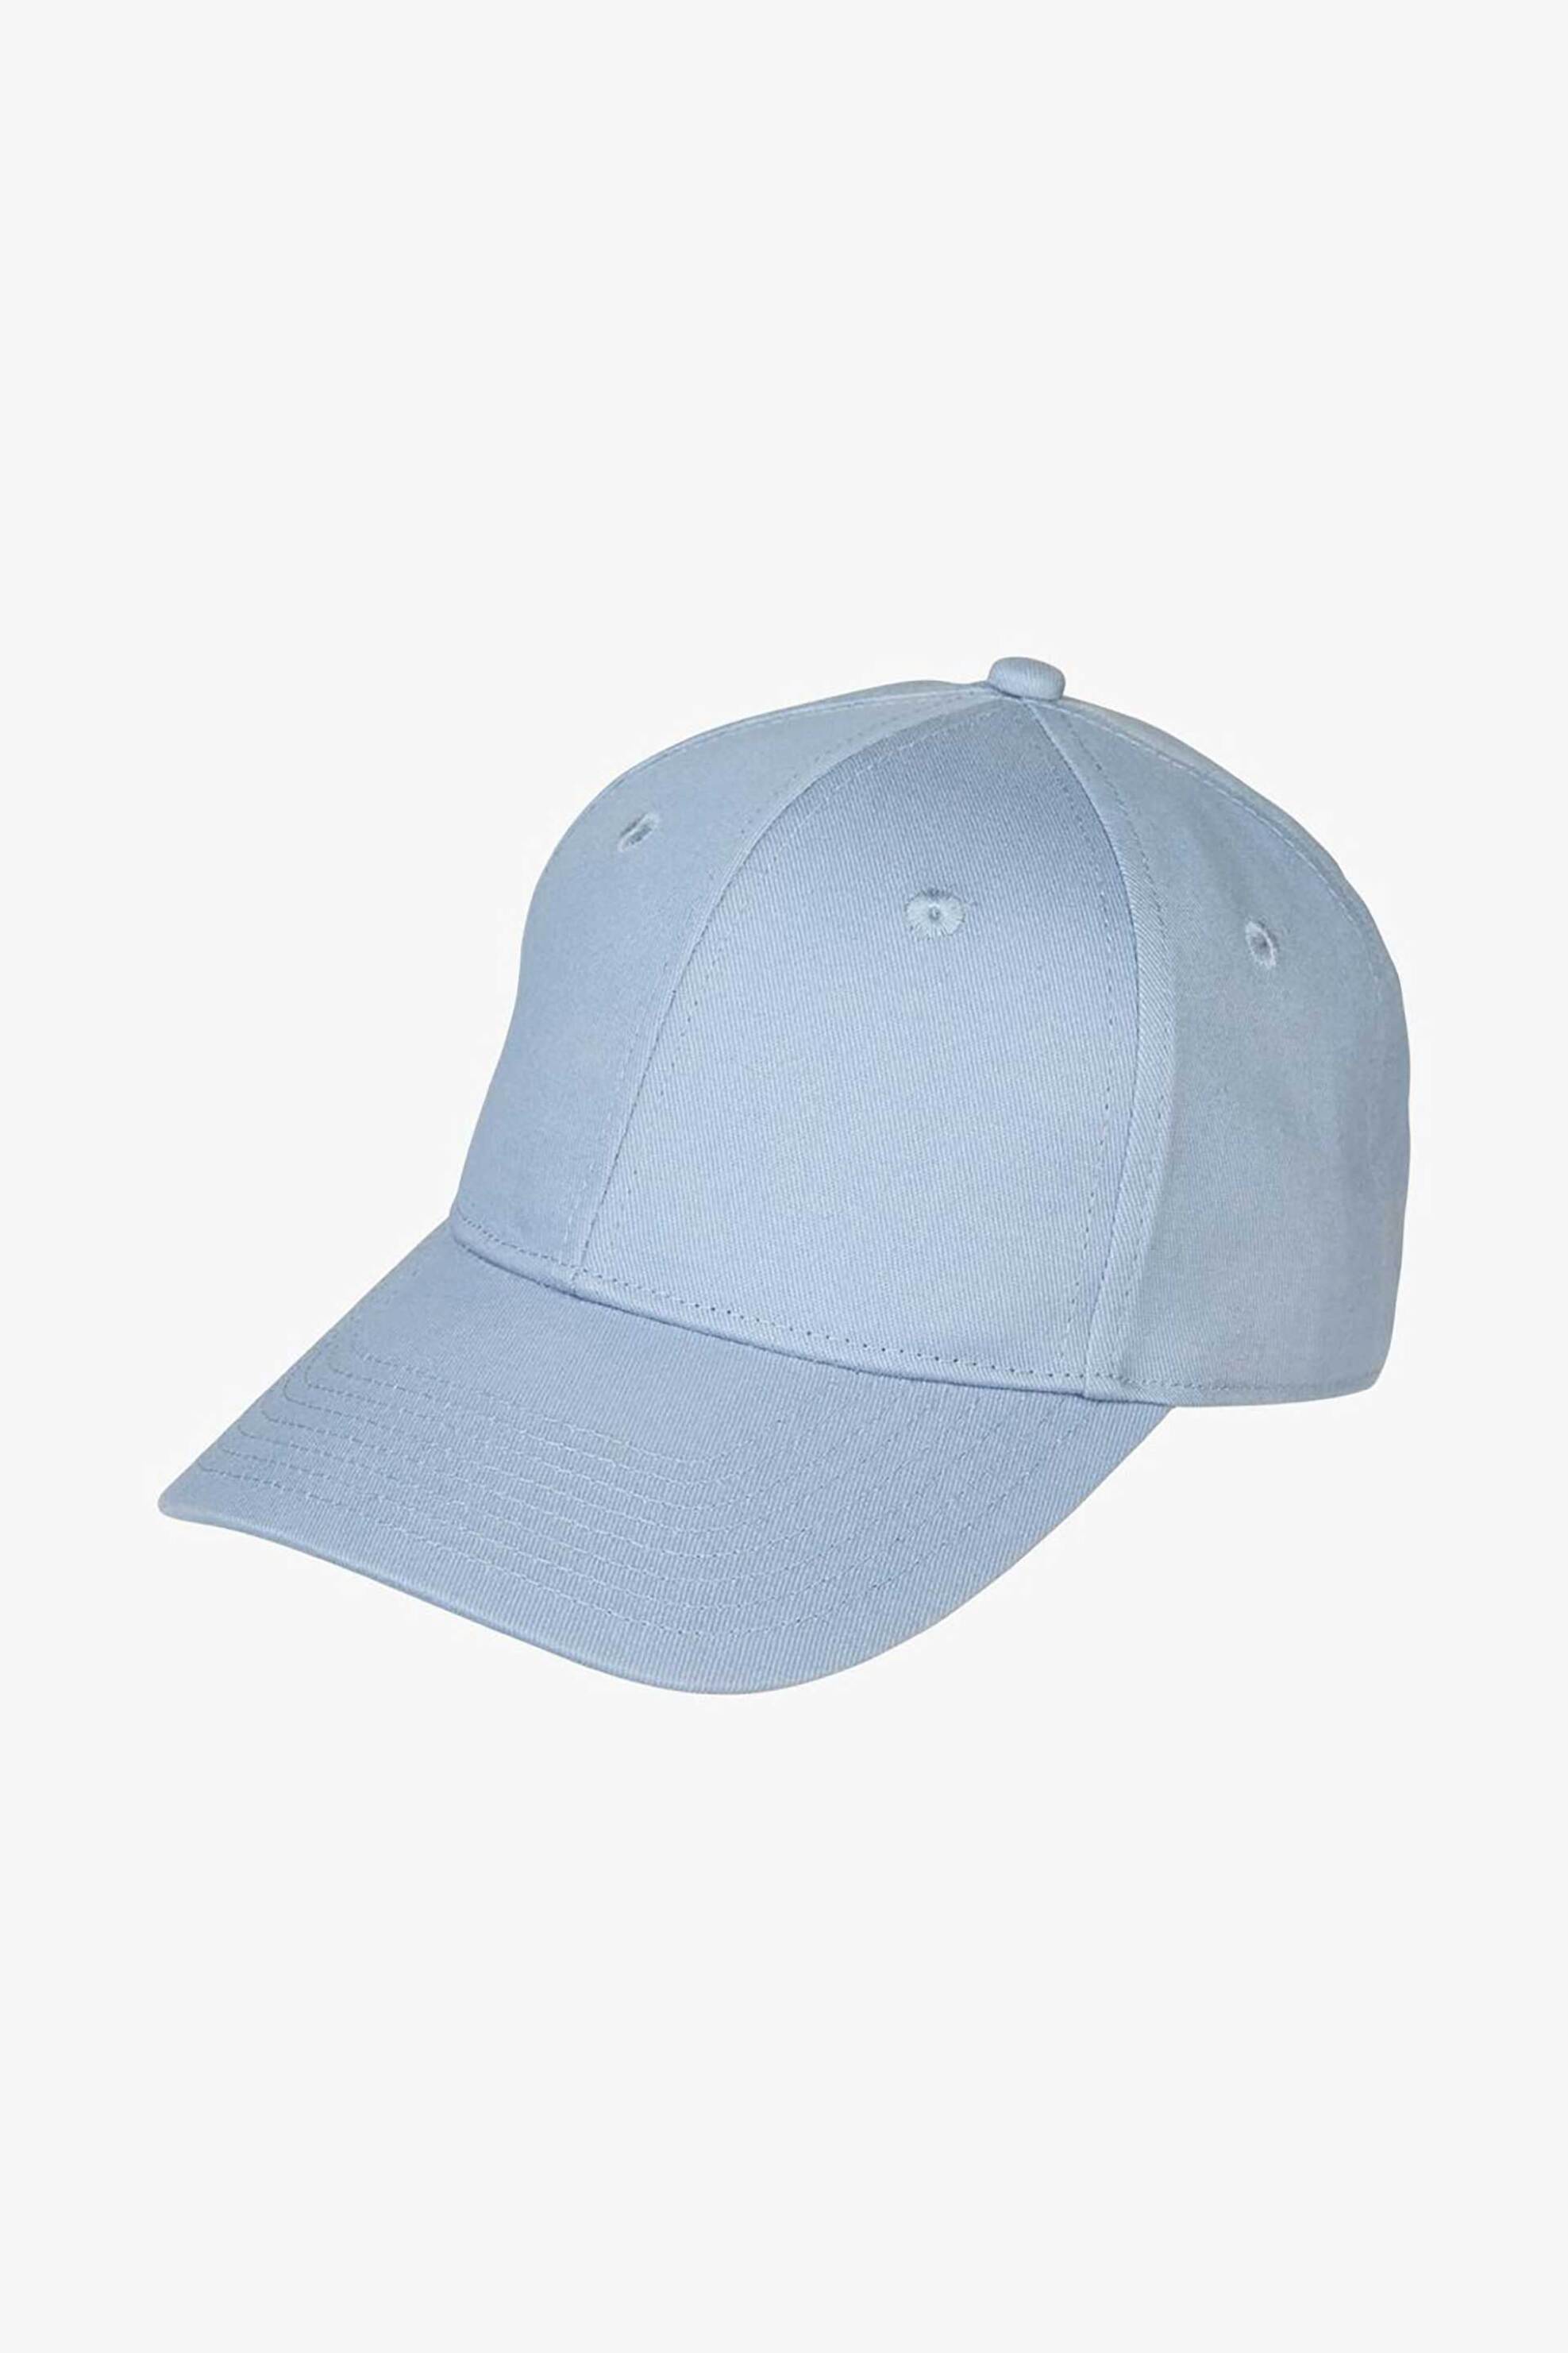 Ανδρική Μόδα > Ανδρικά Αξεσουάρ > Ανδρικά Καπέλα & Σκούφοι Profuomo ανδρικό καπέλο μονόχρωμο με μεταλλικό κυκλικό λογότυπο στο πλάι - PPVC10002G Μπλε Ανοιχτό